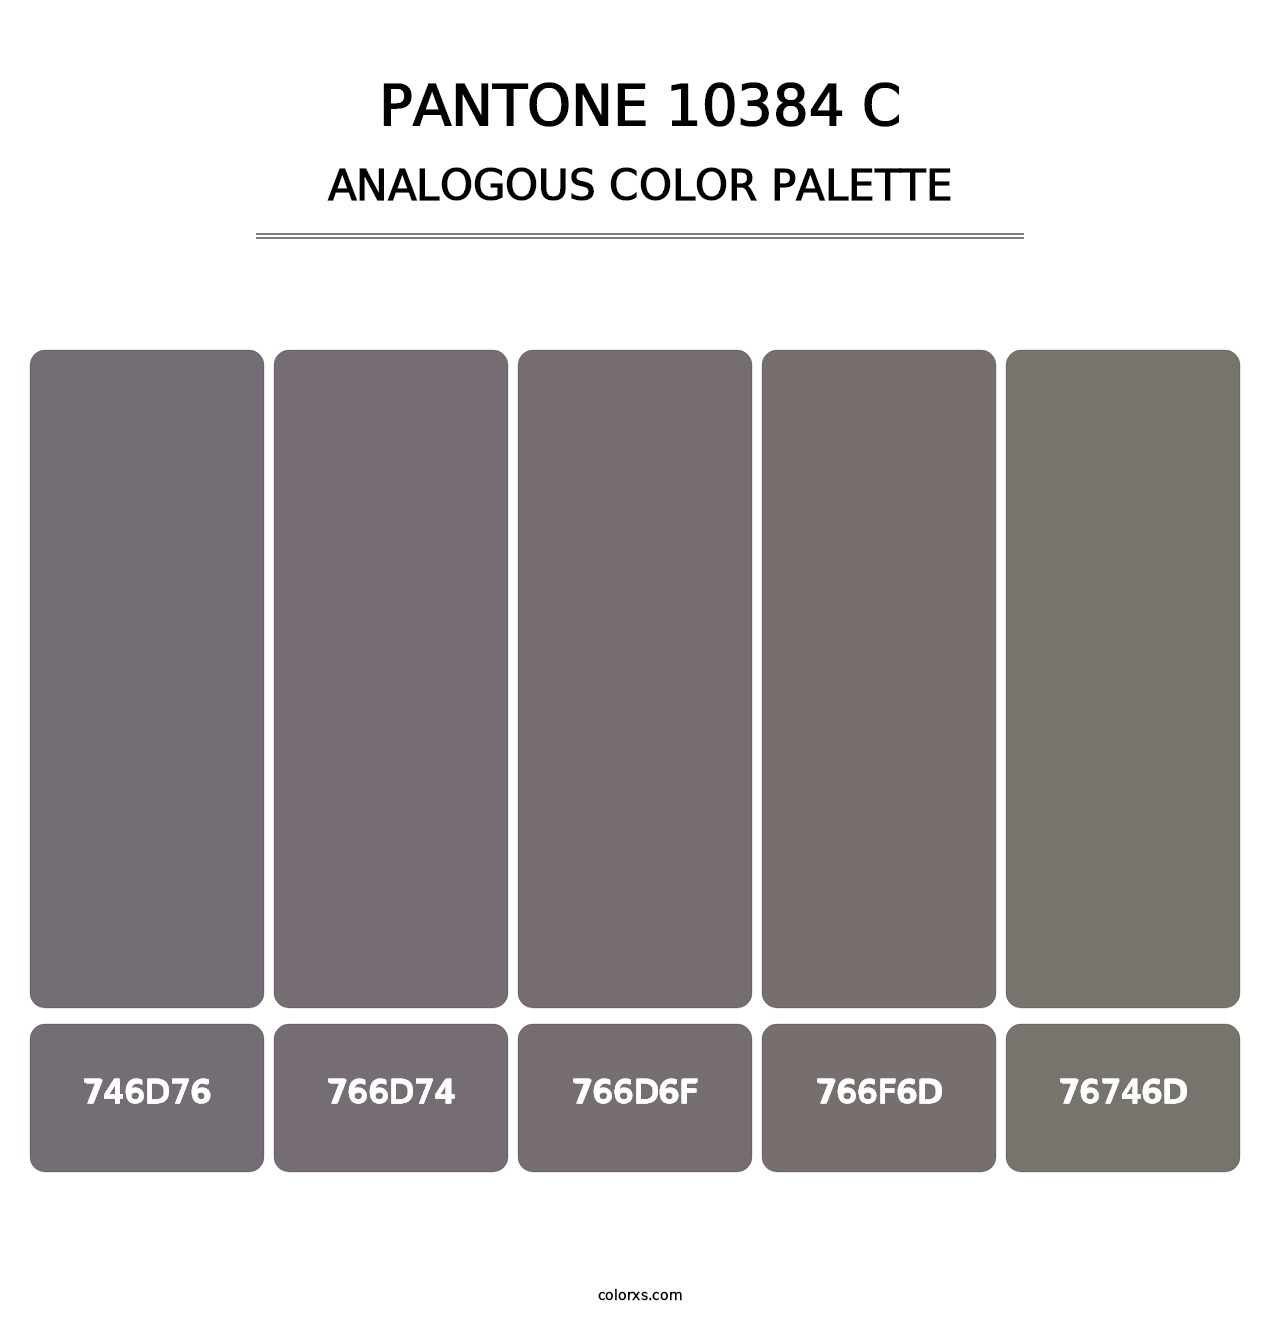 PANTONE 10384 C - Analogous Color Palette